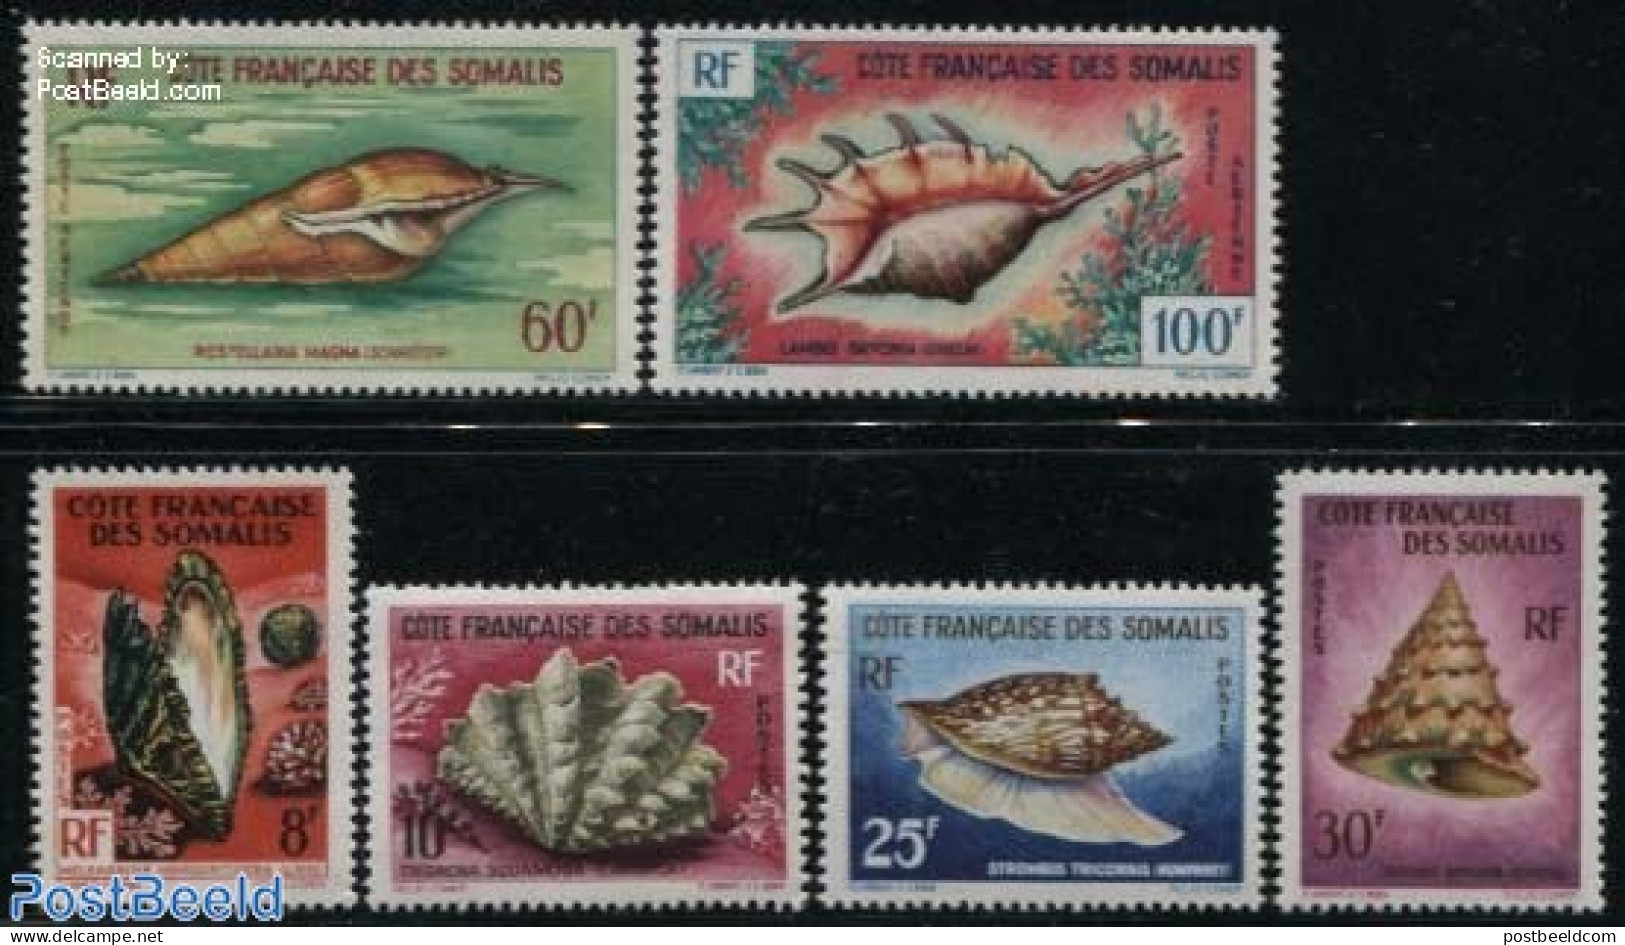 French Somalia 1963 Shells 6v, Unused (hinged), Nature - Shells & Crustaceans - Marine Life